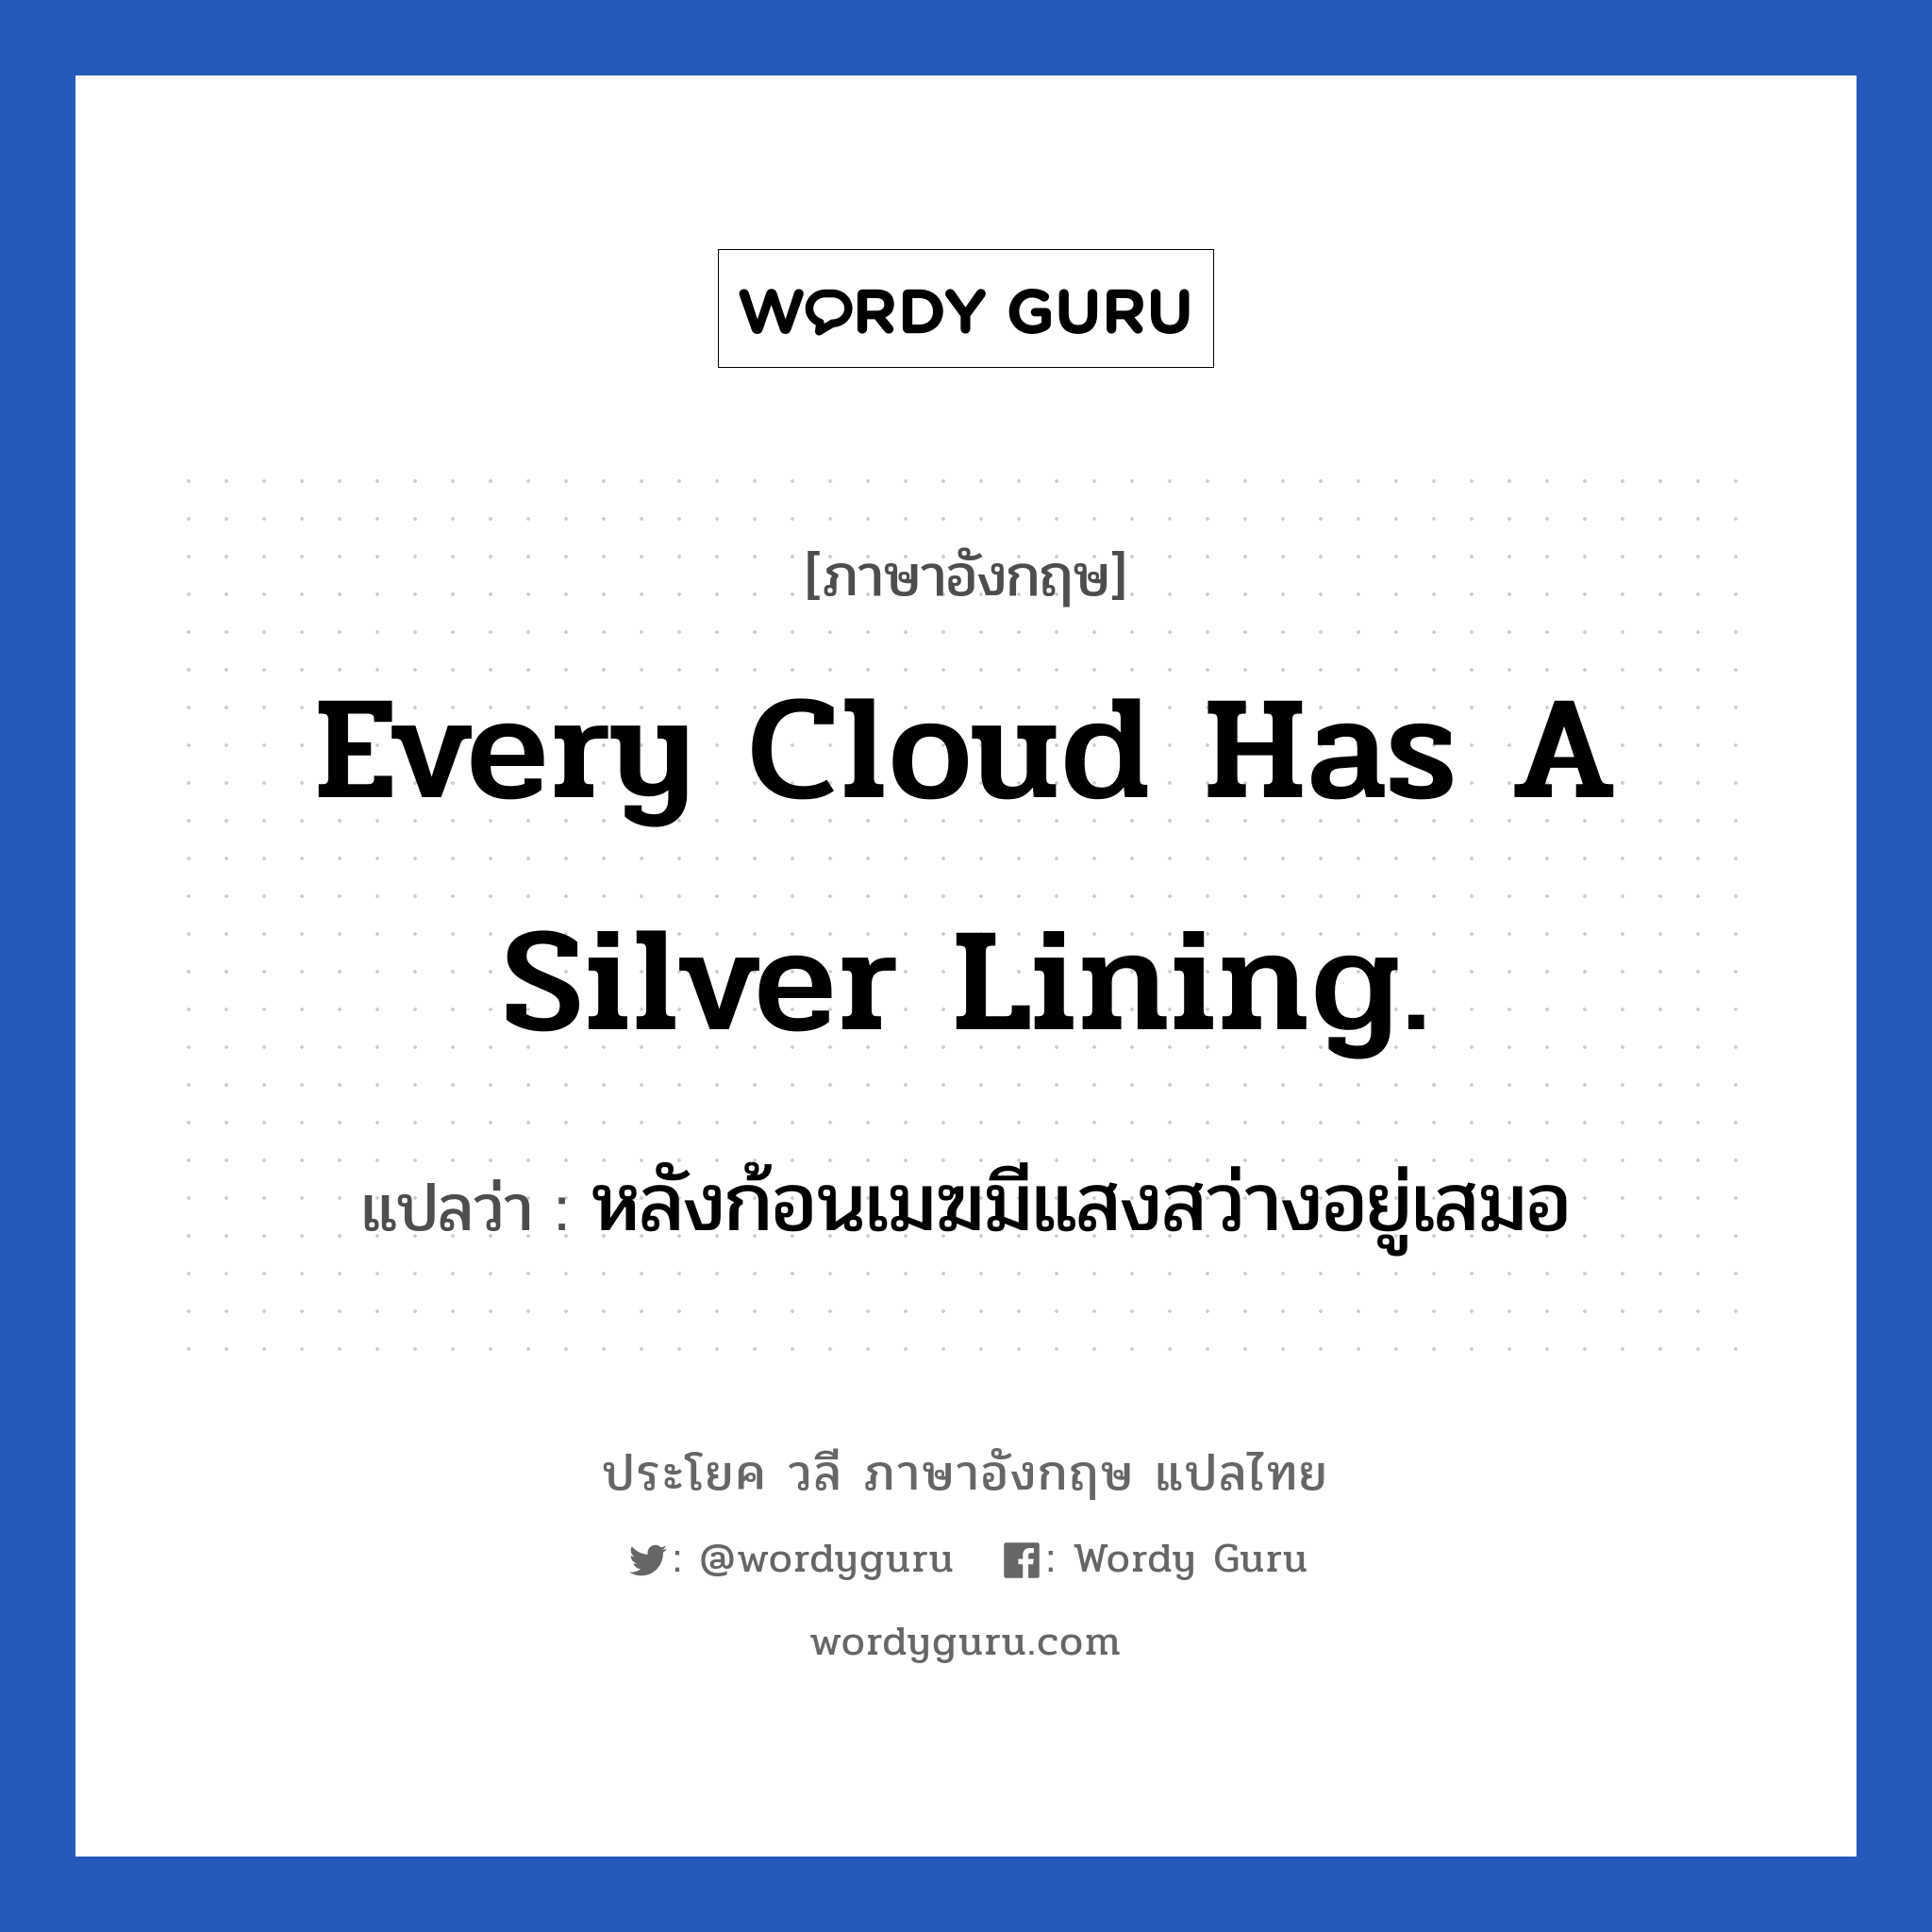 หลังก้อนเมฆมีแสงสว่างอยู่เสมอ ภาษาอังกฤษ?, วลีภาษาอังกฤษ หลังก้อนเมฆมีแสงสว่างอยู่เสมอ แปลว่า Every cloud has a silver lining. ย่อมมีสิ่งดี ๆ ตามหลังจากสิ่งที่ไม่ดีเสมอ หมวด ให้กำลังใจ